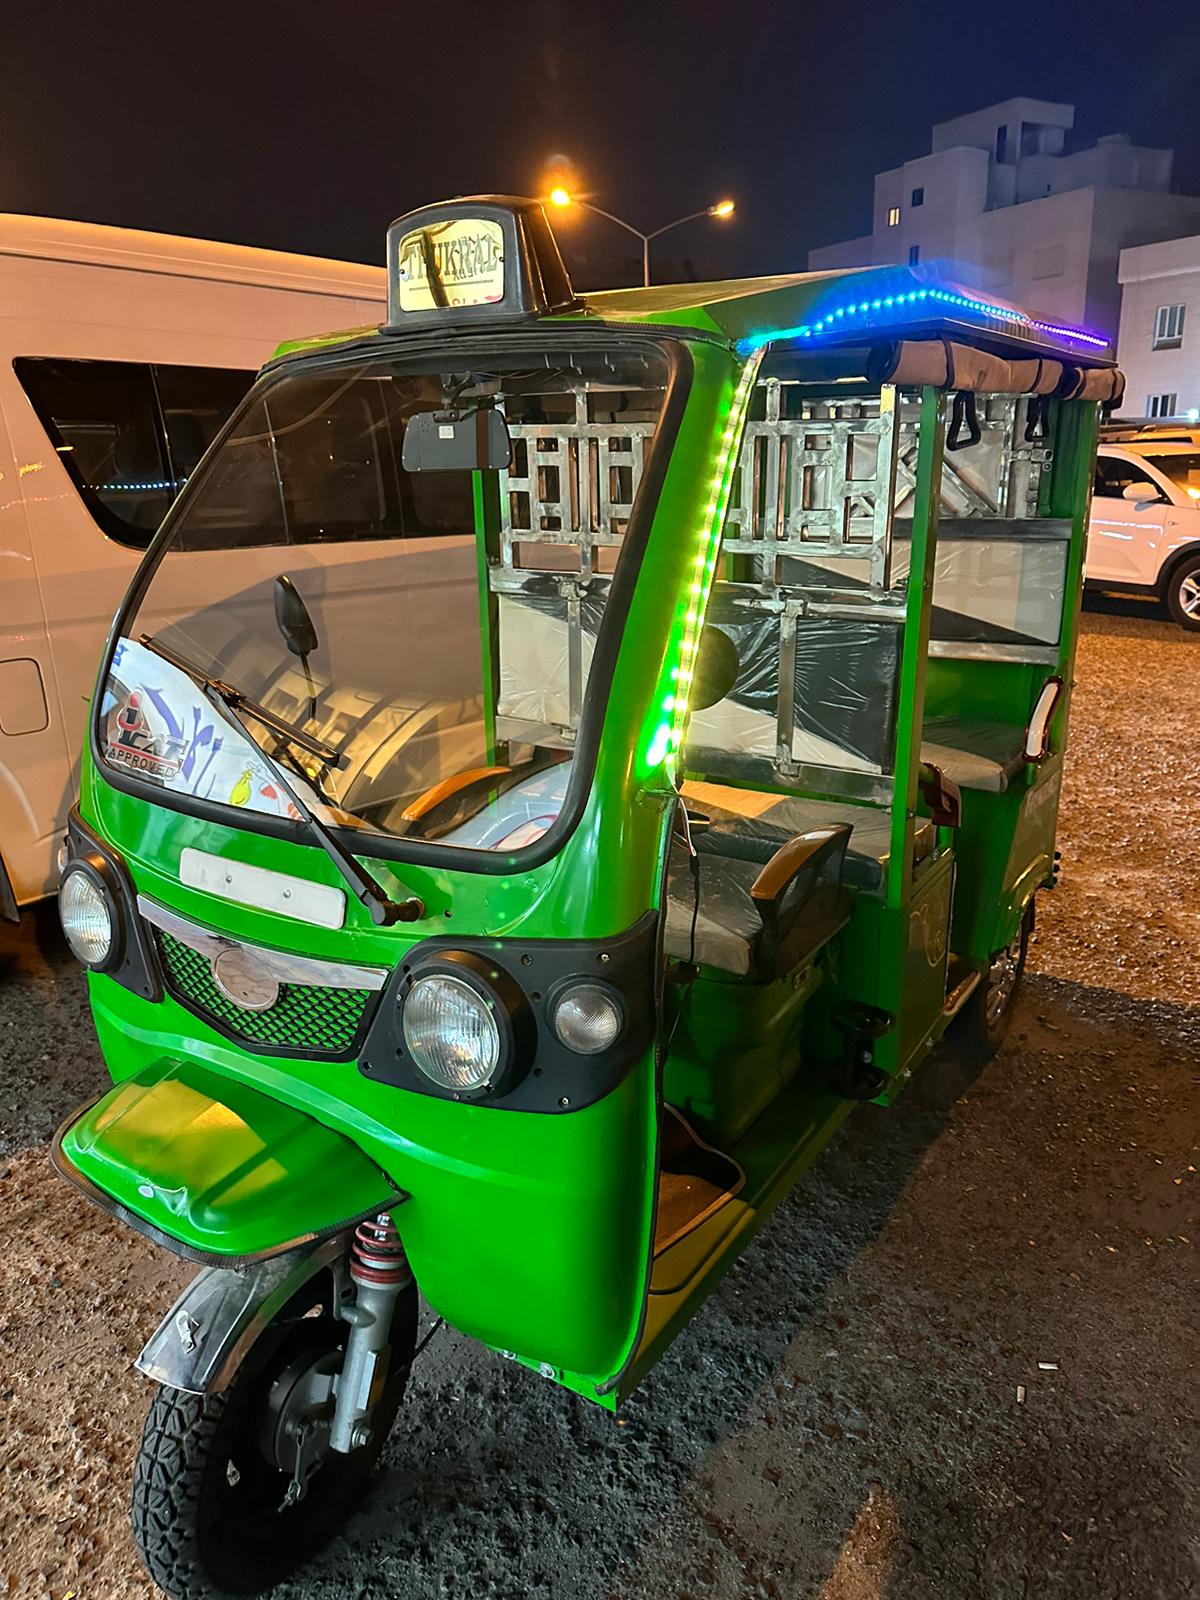 Electric Tuktuk